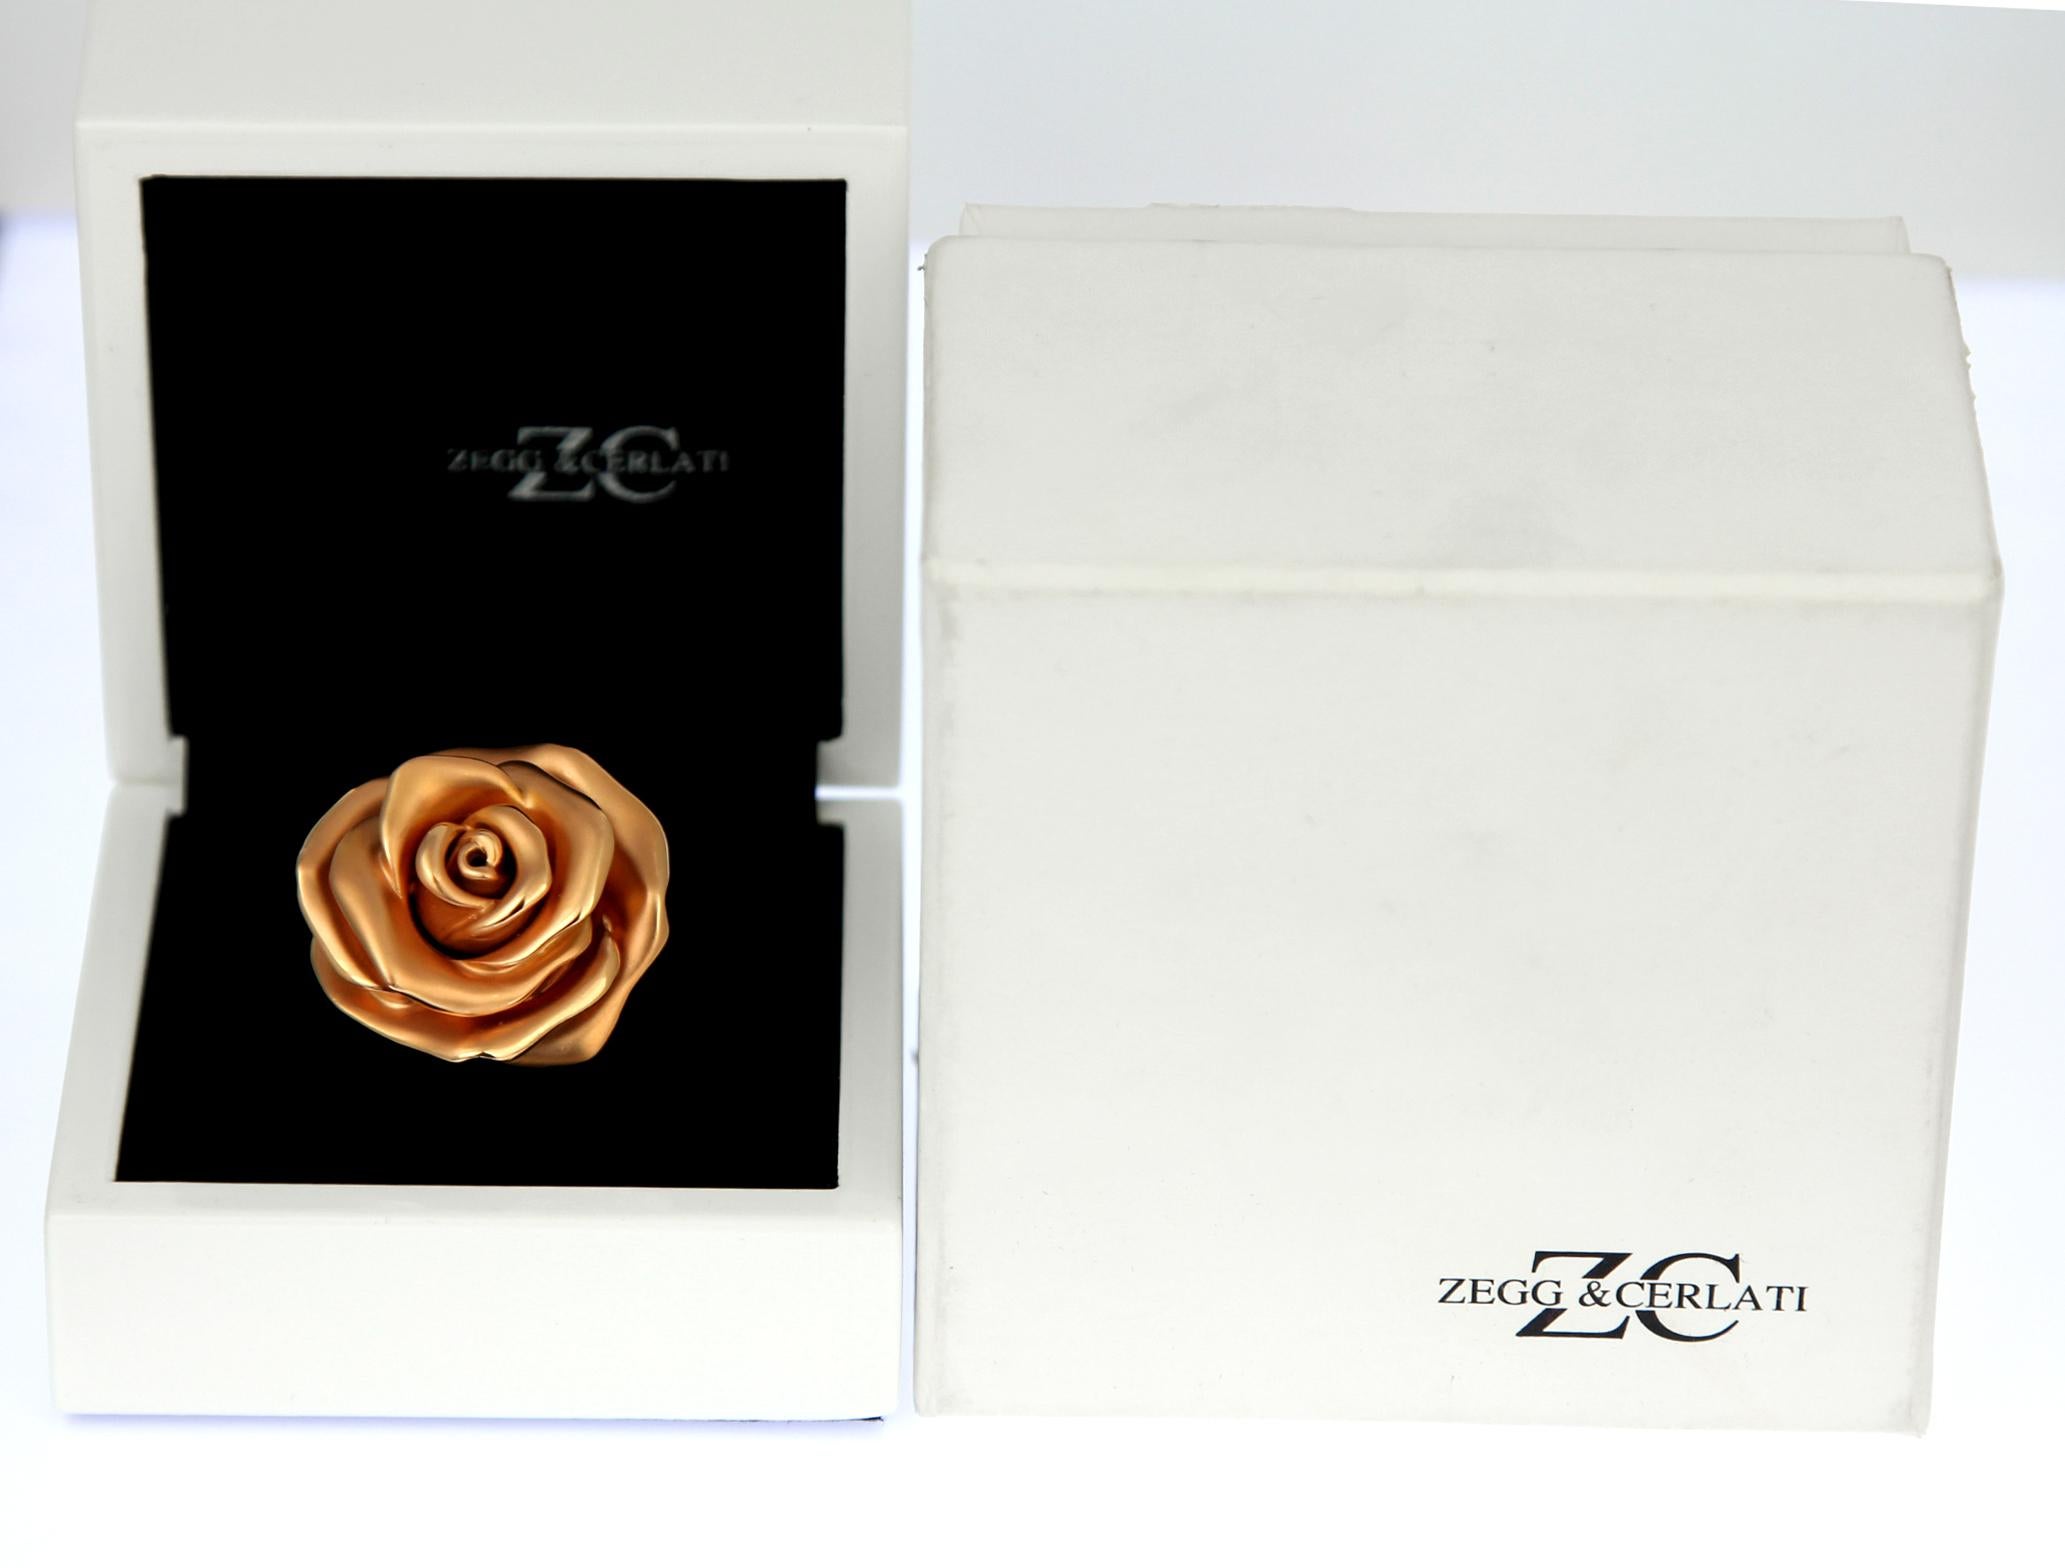 Zegg & Cerlati Designer 'Monaco' Rose Ring with Perfume in 18K Rose Gold For Sale 2